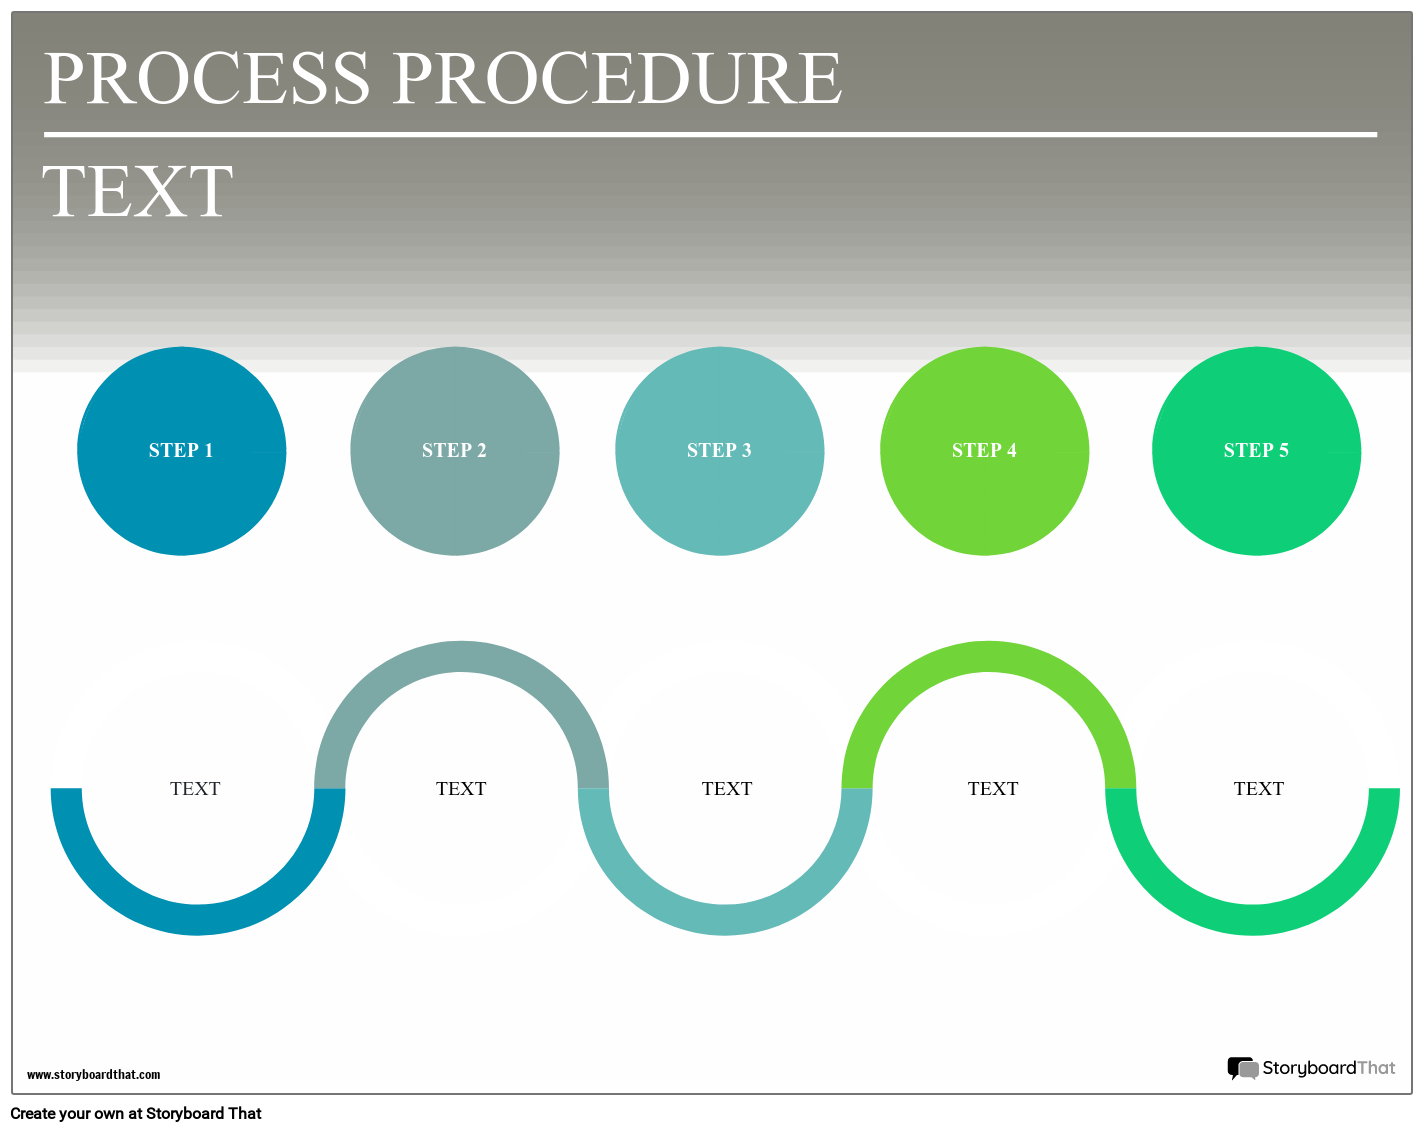 Process 1